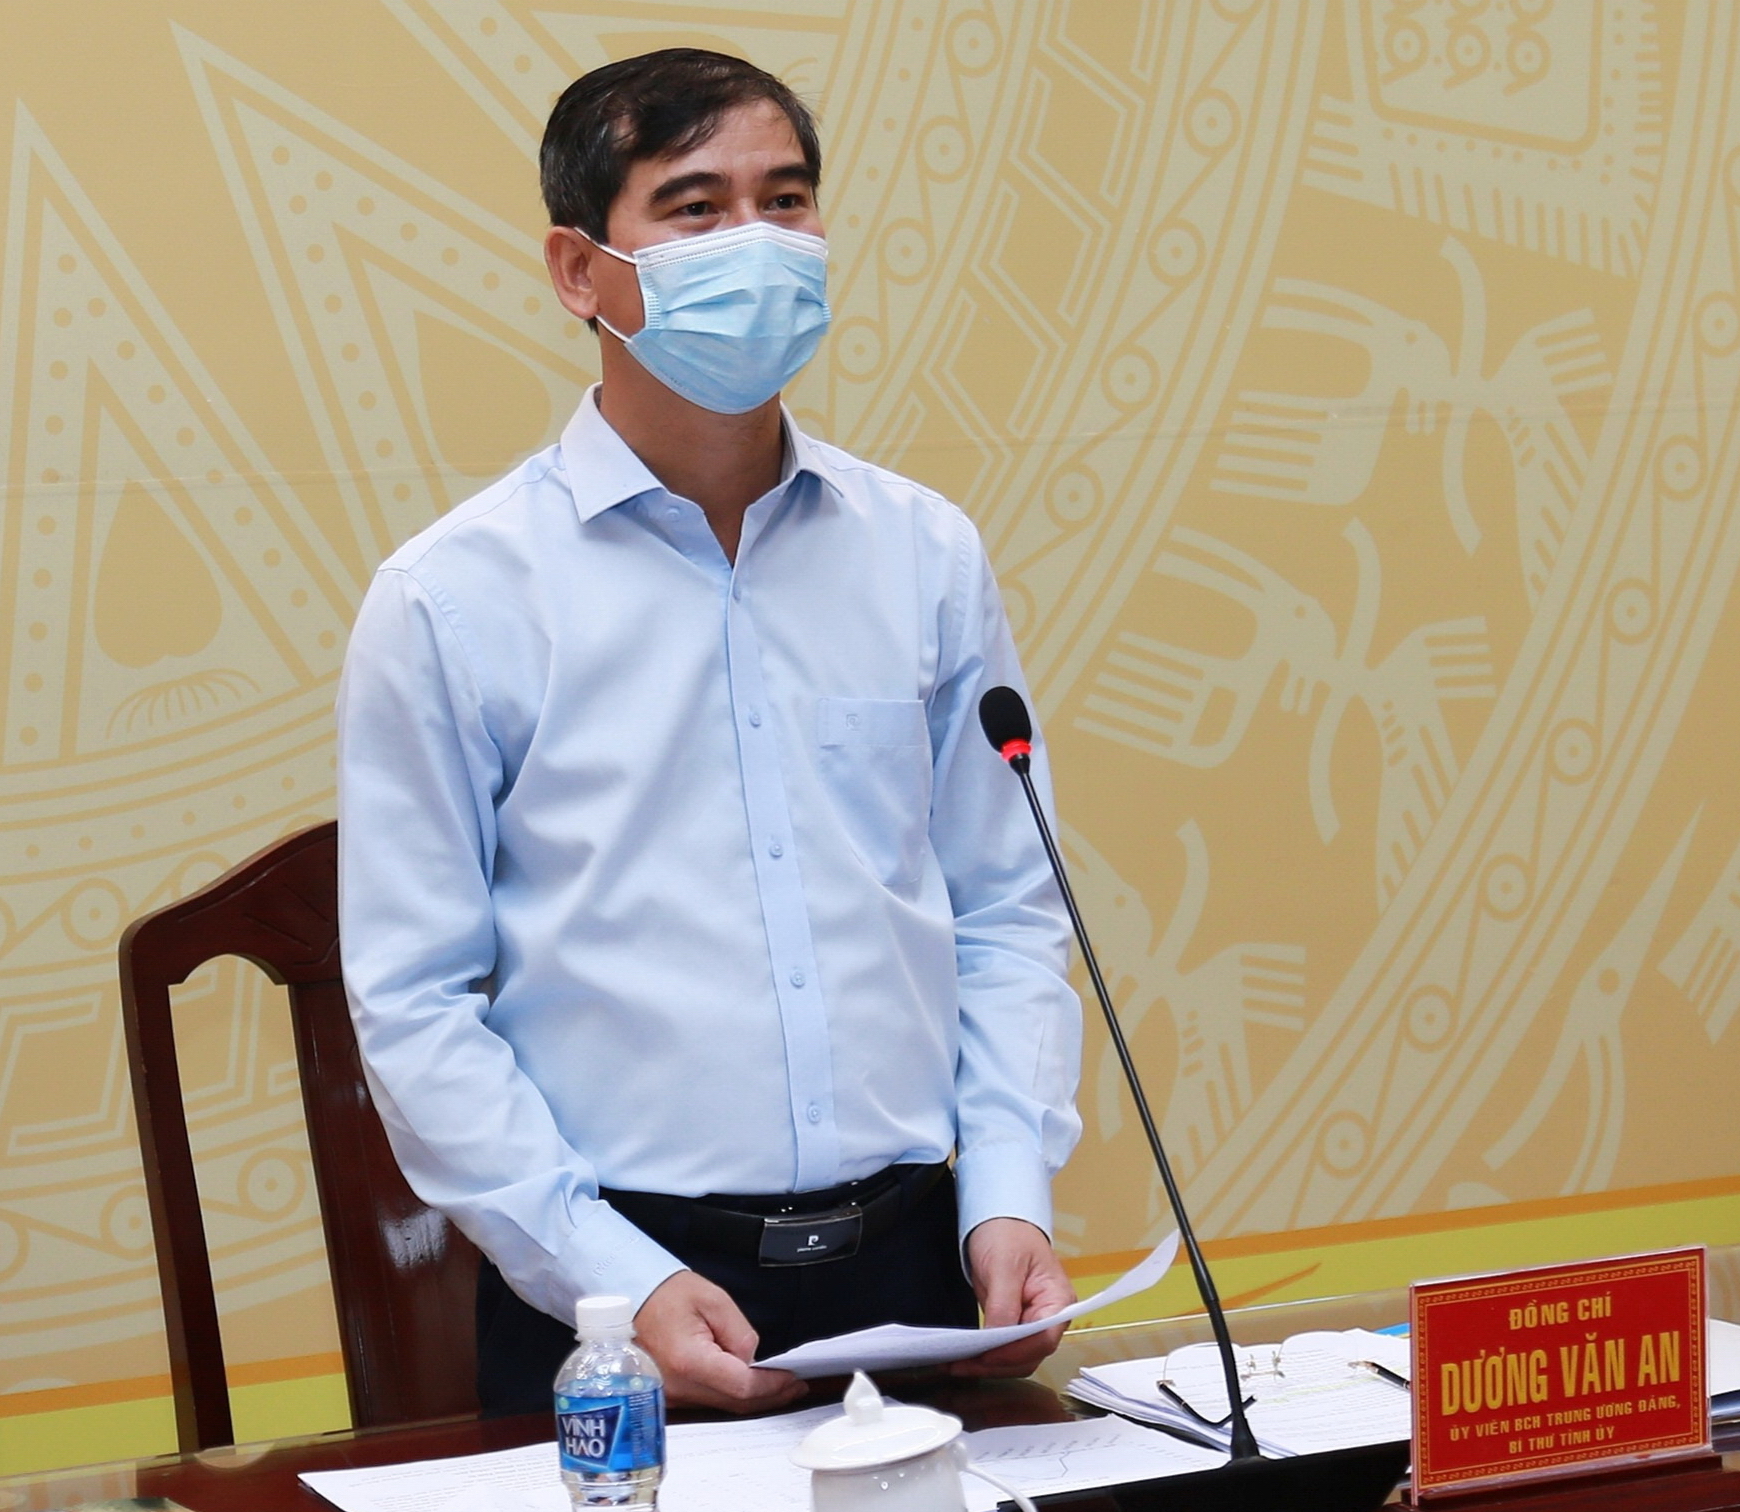 Bình Thuận: Quyết tâm xây dựng hồ chứa nước La Ngà 3 để phát triển nông nghiệp - Ảnh 1.